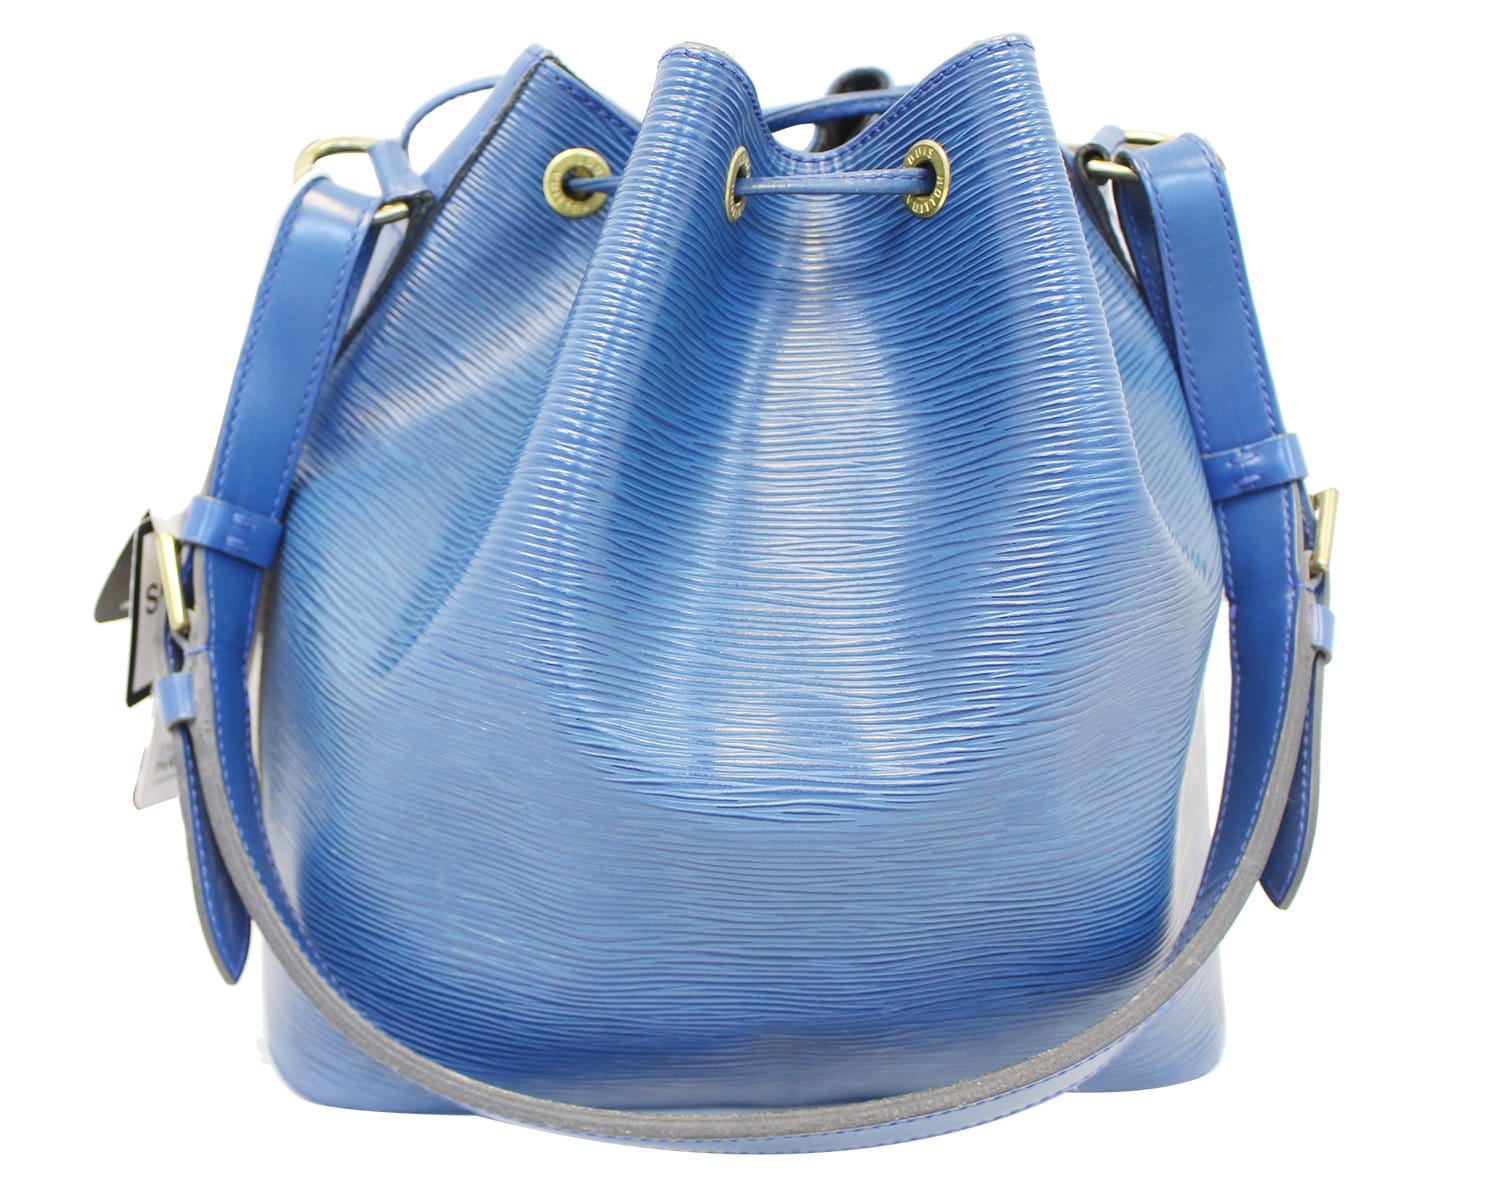 Authentic Louis Vuitton Blue Handbag in EPI Leather